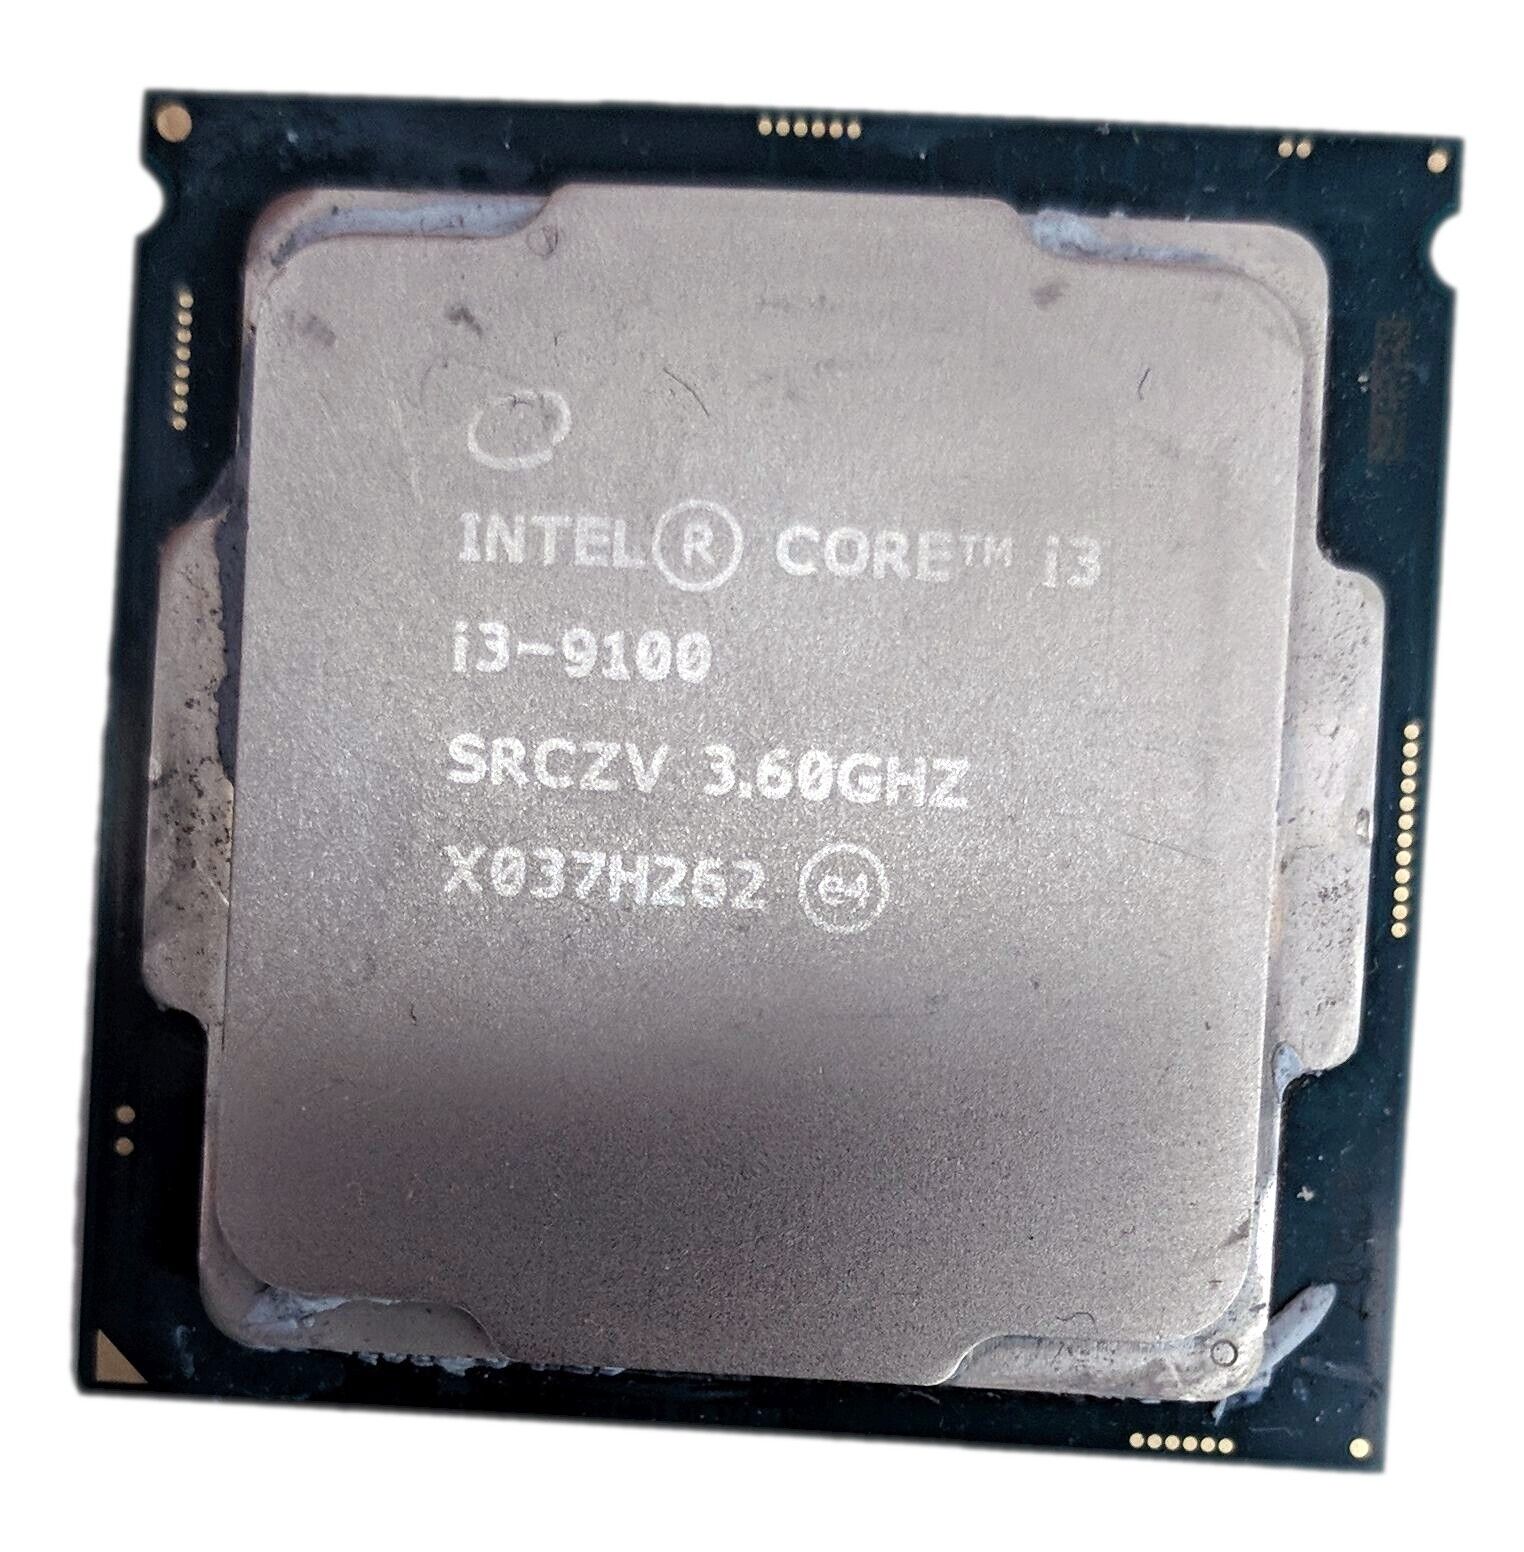 Intel Core i3-9100 3.60GHz Quad-Core 6MB LGA 1151/Socket H4 CPU Processor SRCZV